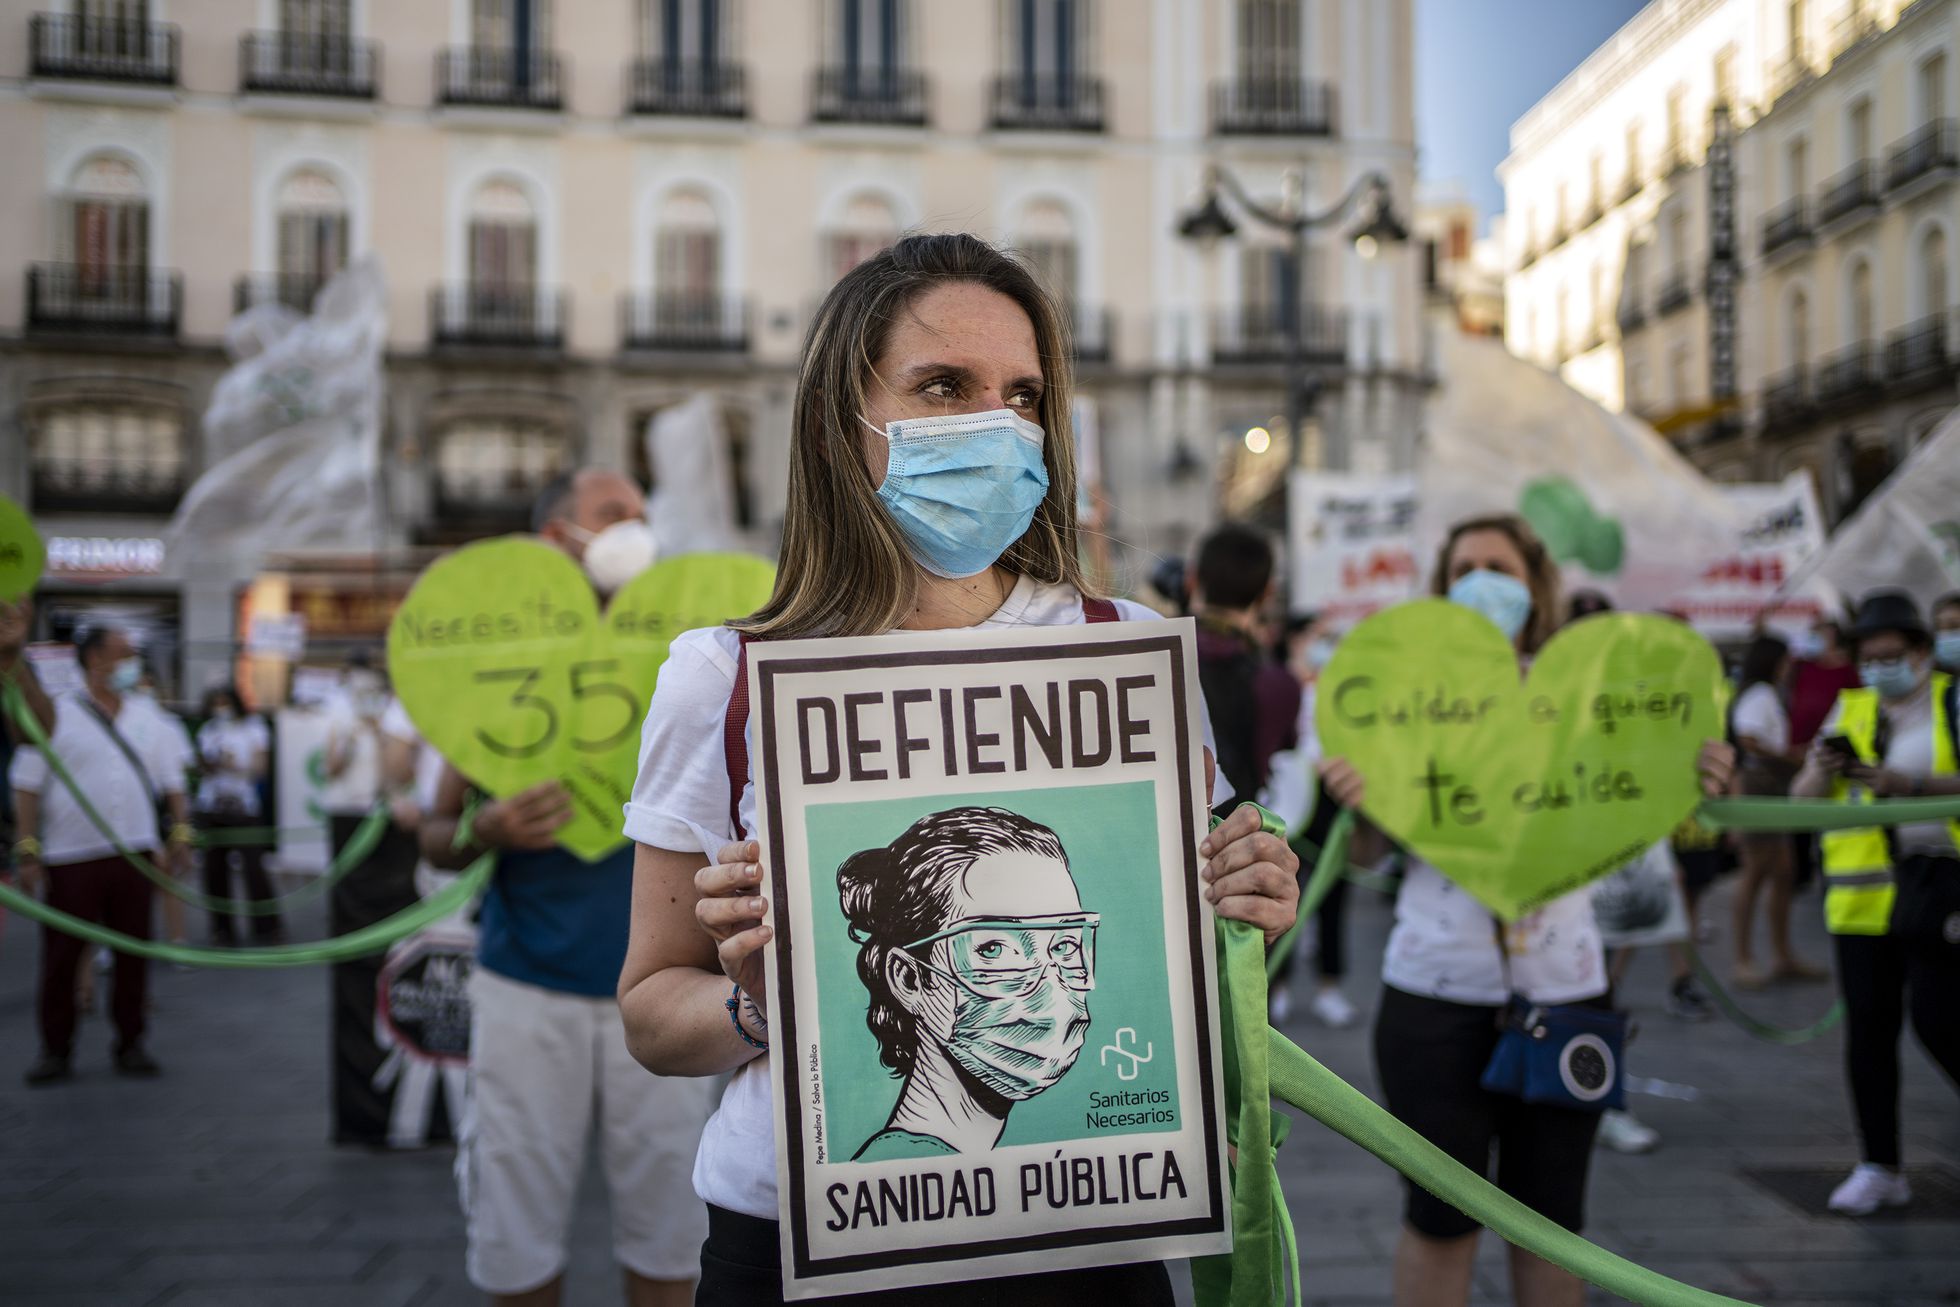 Concentración en la Puerta del Sol de Madrid en defensa de la sanidad publica y bajo el lema "sanitarios necesarios", el 29 de junio. / OLMO CALVO
 
